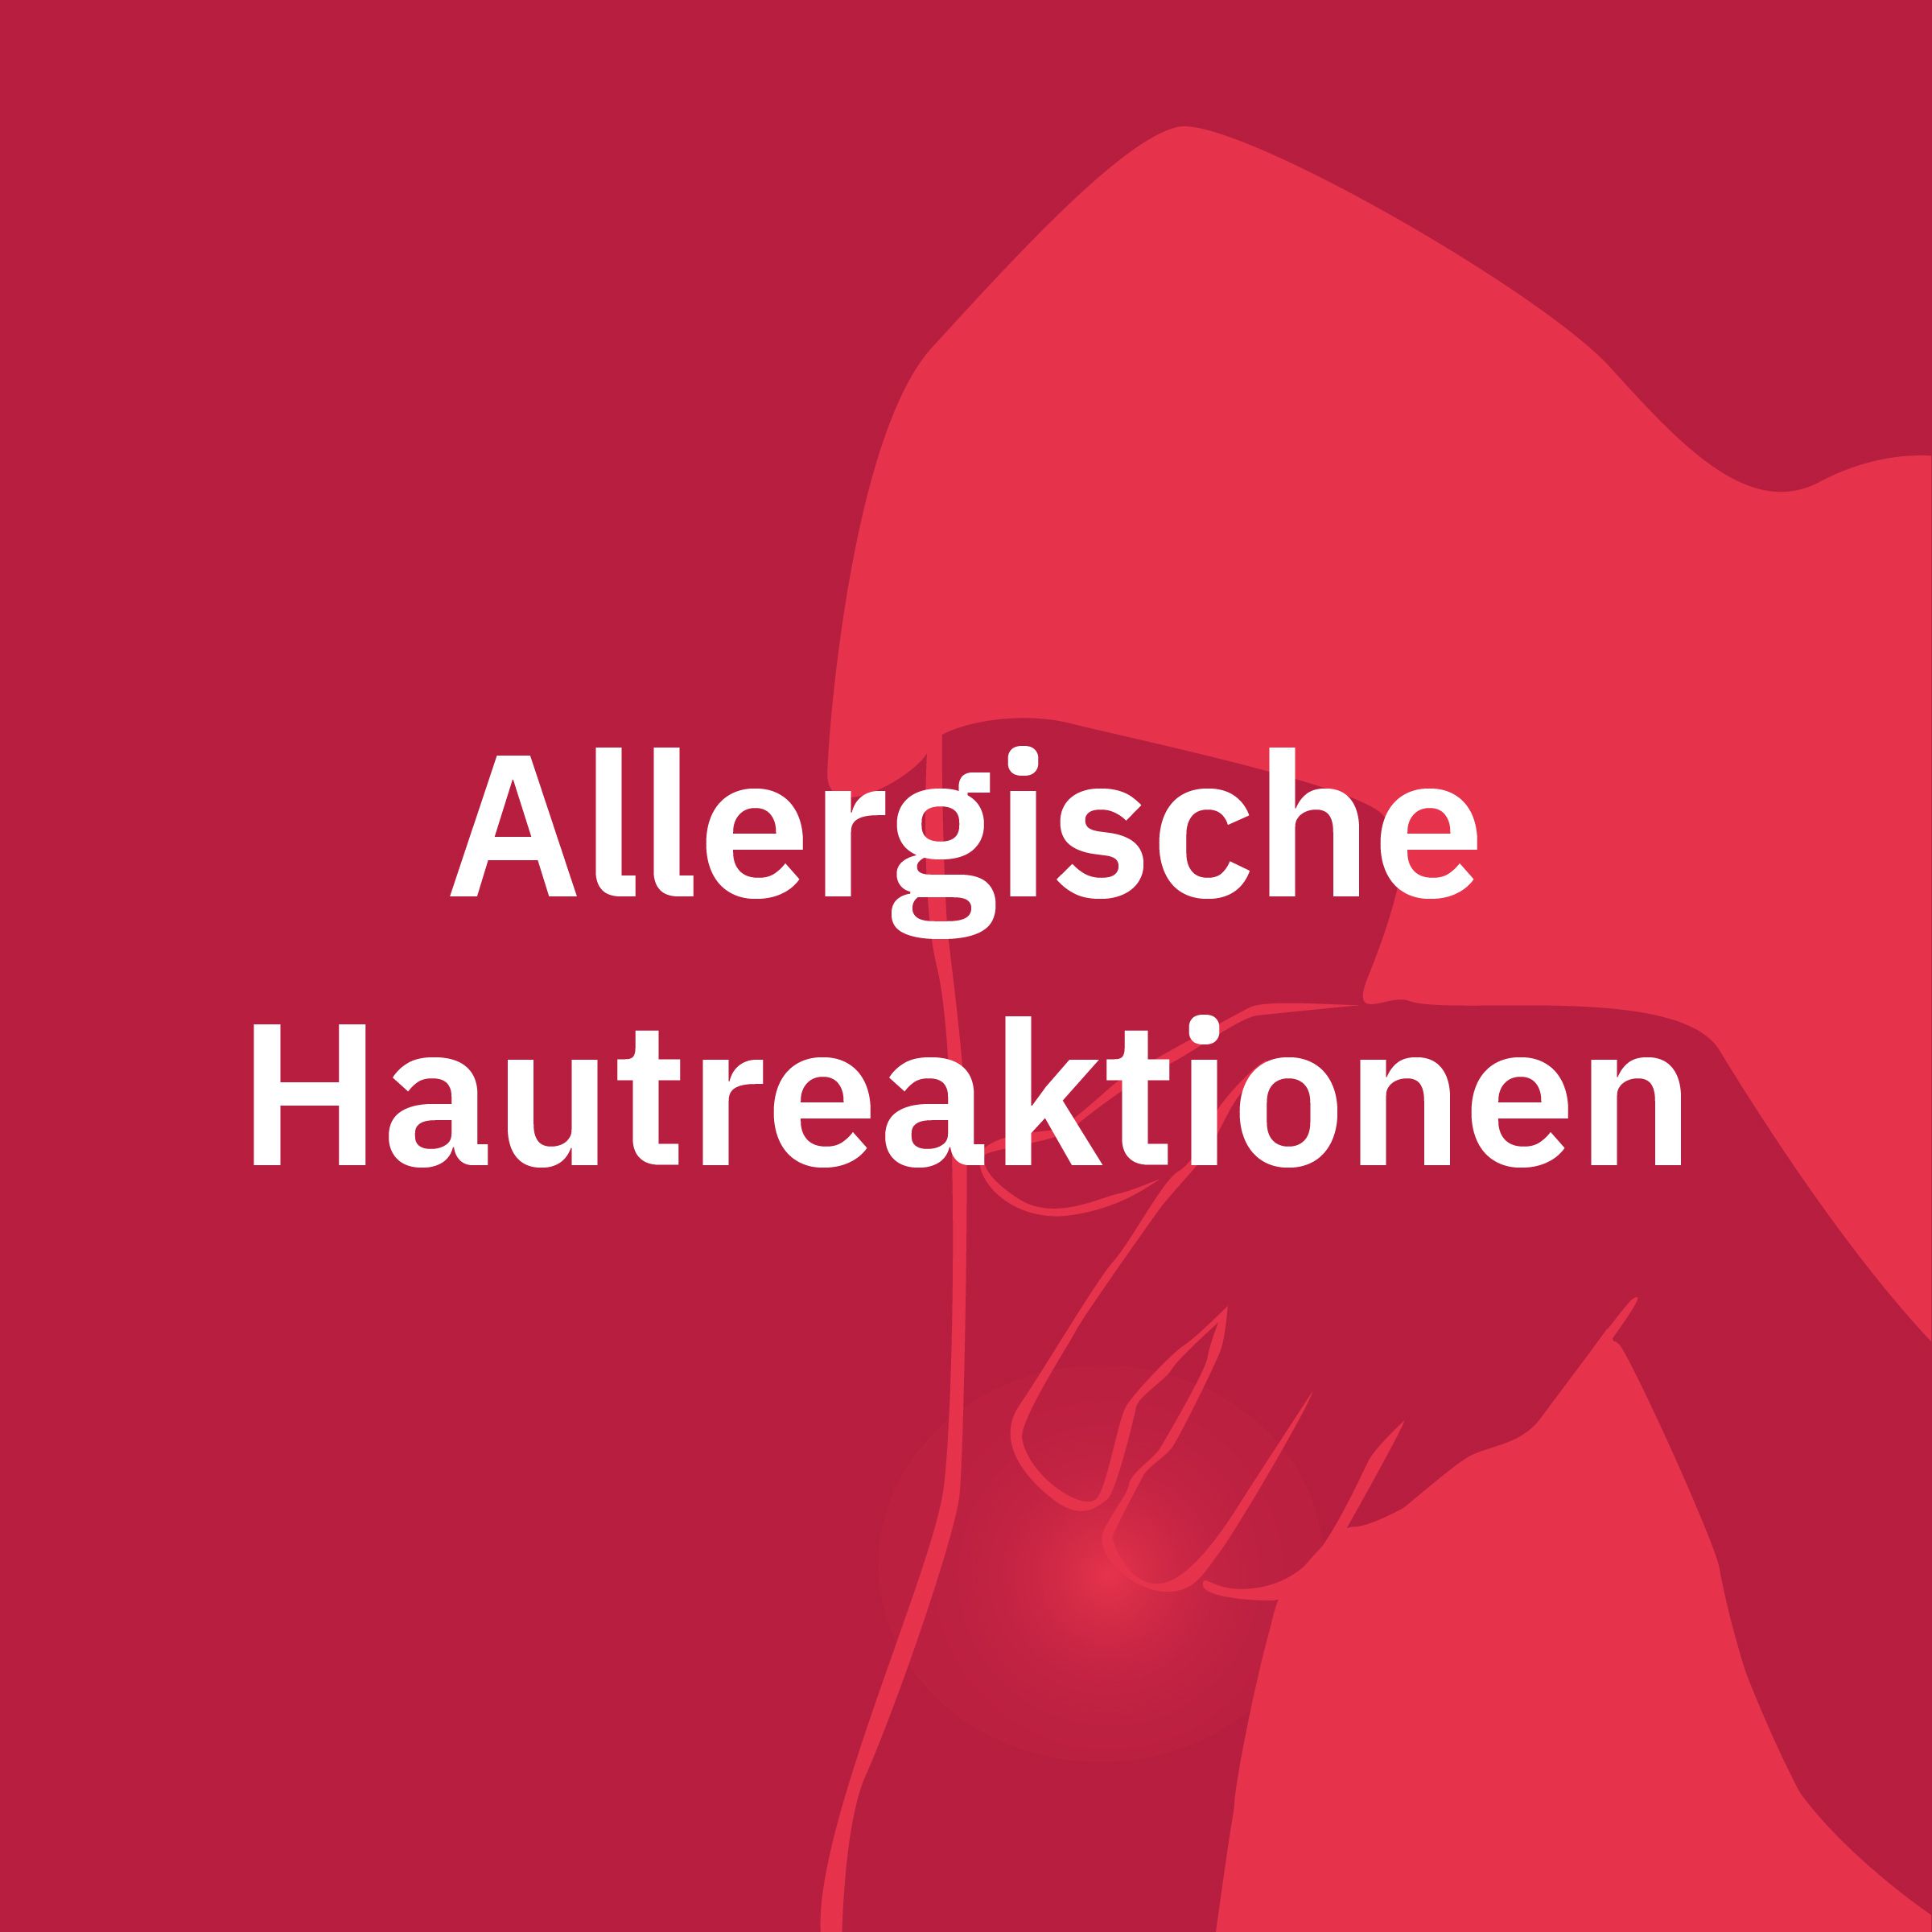 Allergische Hautreaktionen